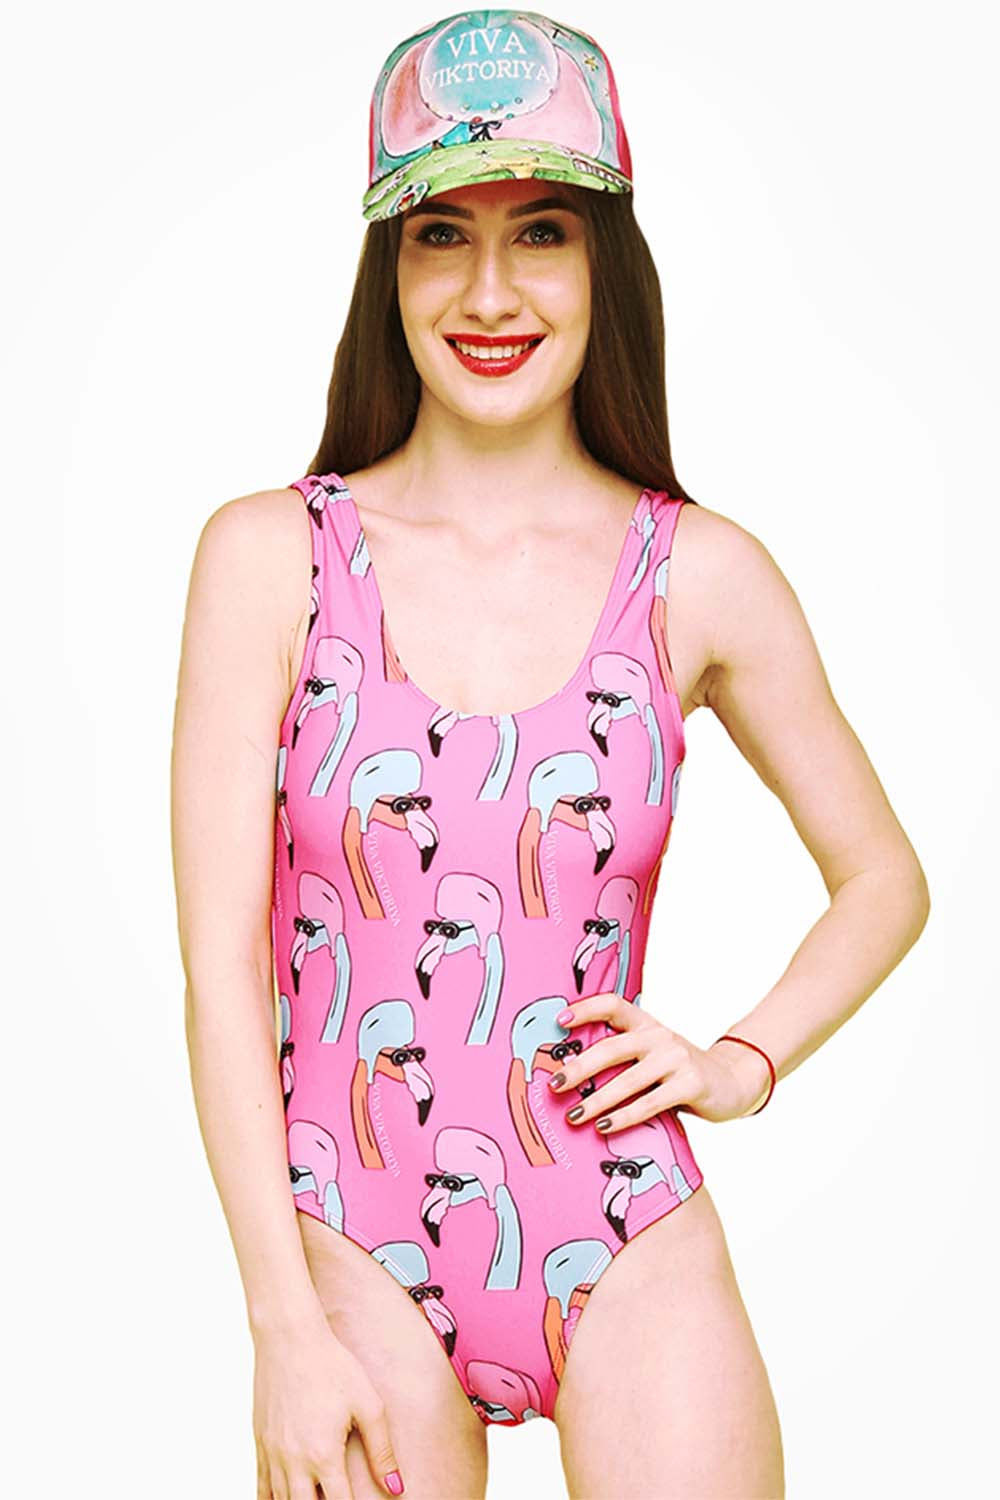 Iyasson Flamingo Cartoon One-piece Swimwear